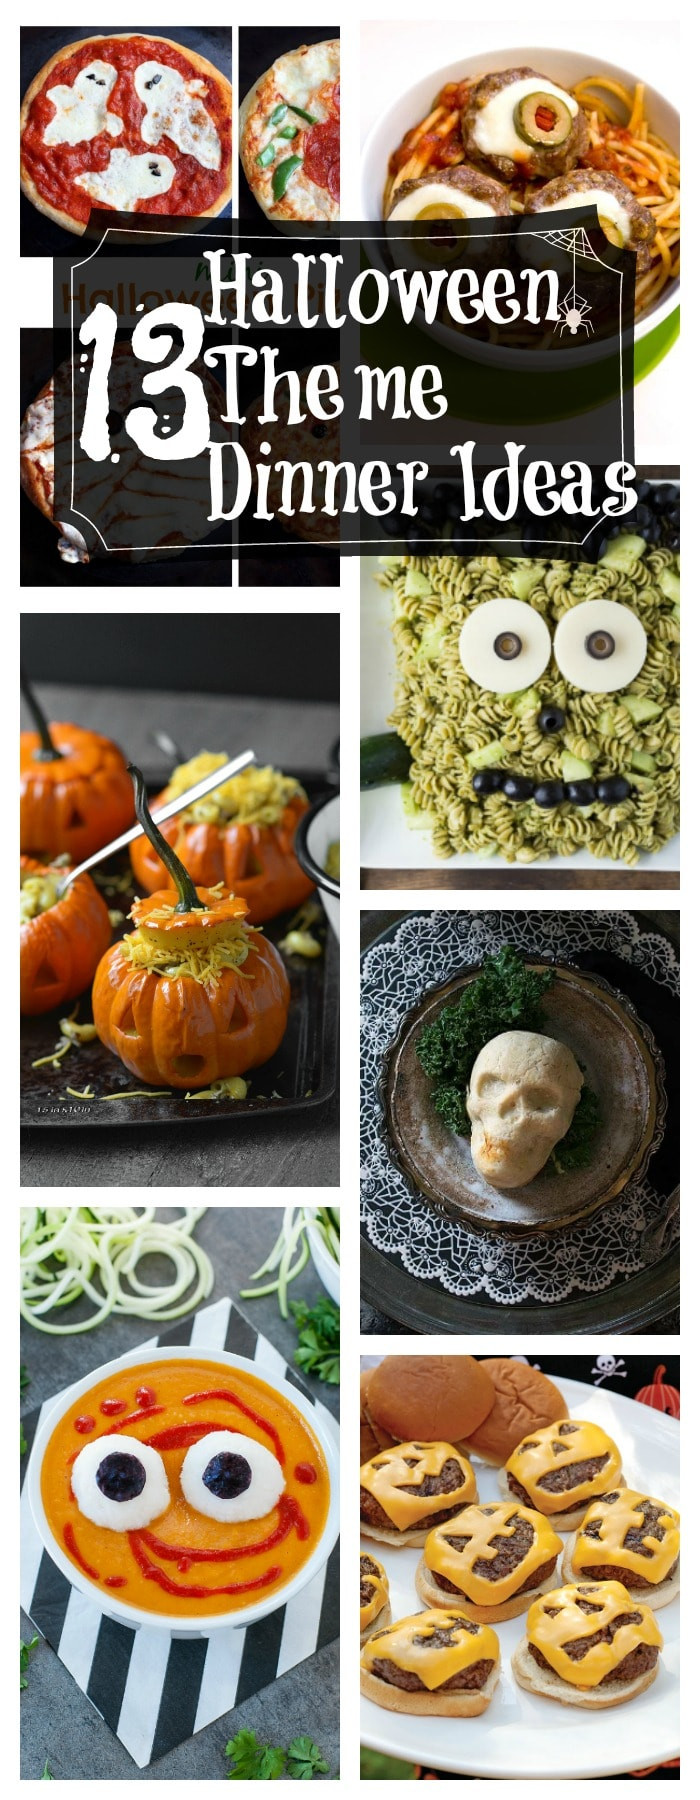 Halloween Dinner Ideas For Kids
 13 Healthy Halloween Themed Dinner Ideas